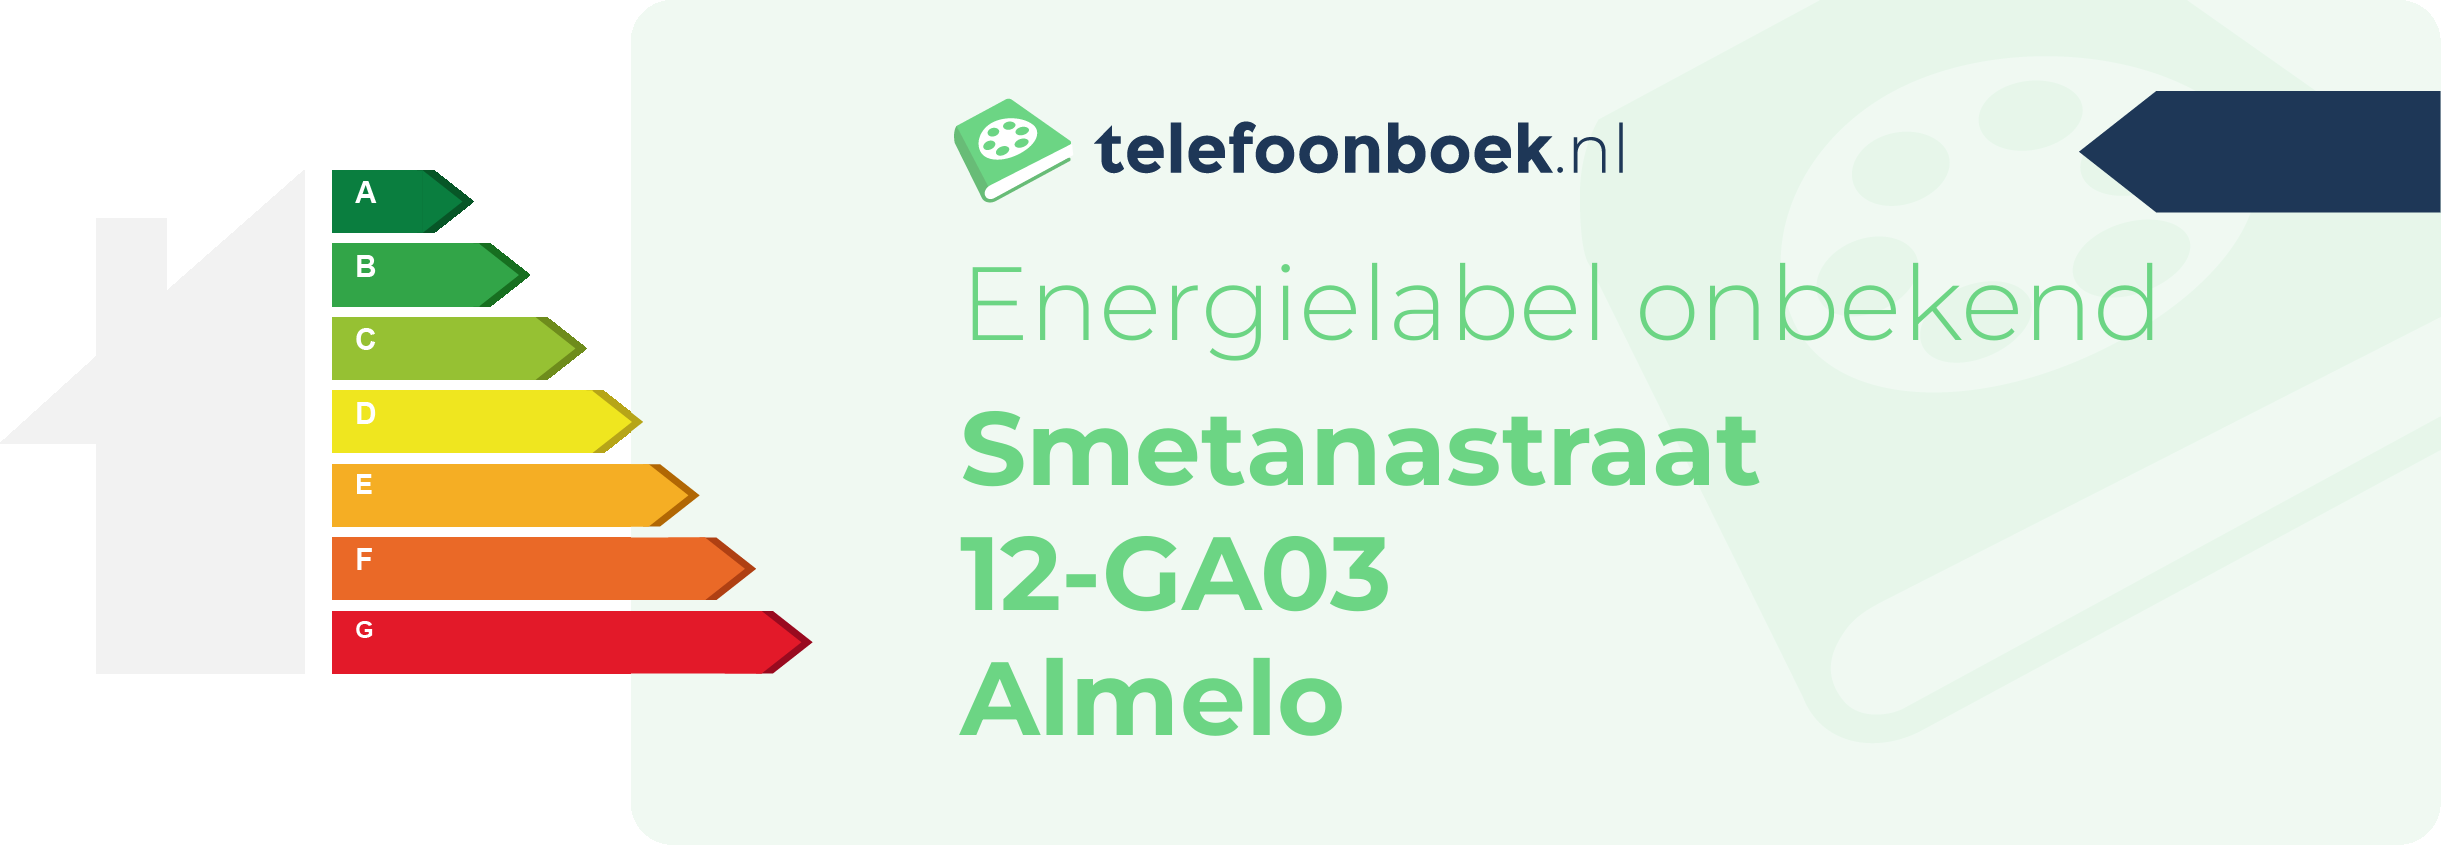 Energielabel Smetanastraat 12-GA03 Almelo